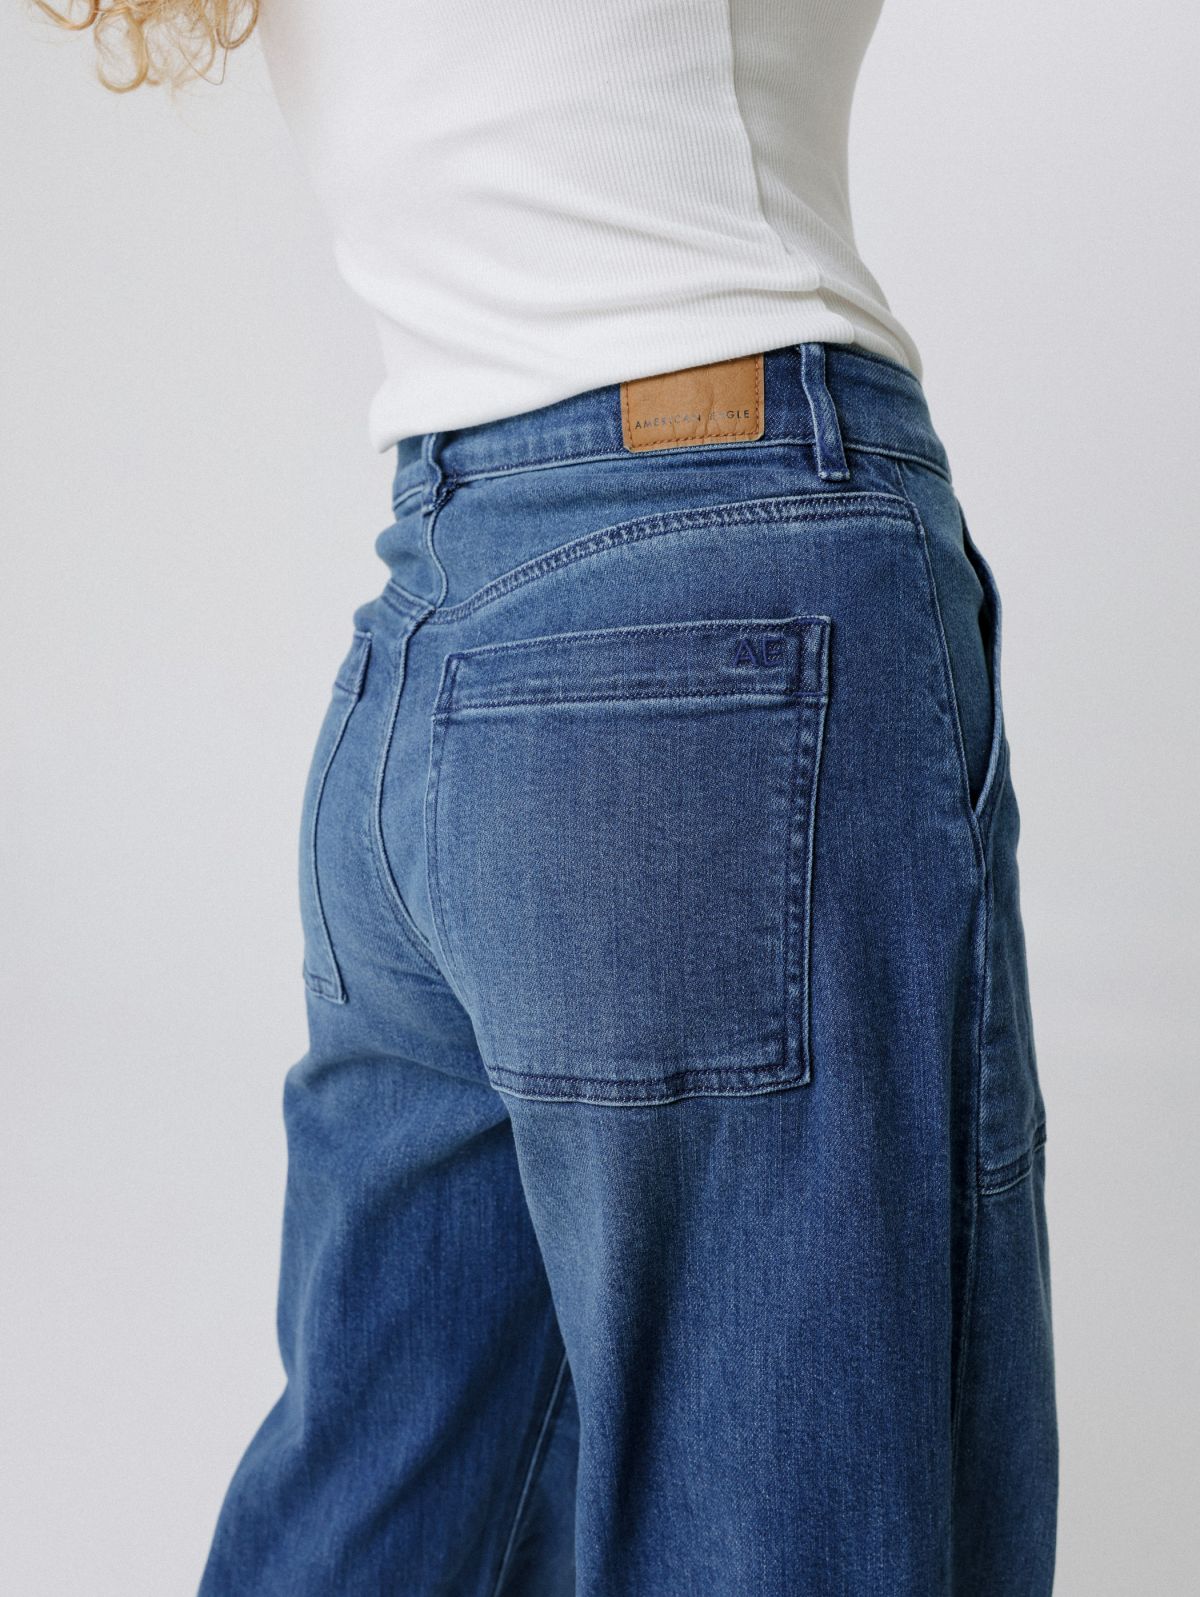  מכנסי ג'ינס גבוהים בגזרה רחבה של AMERICAN EAGLE